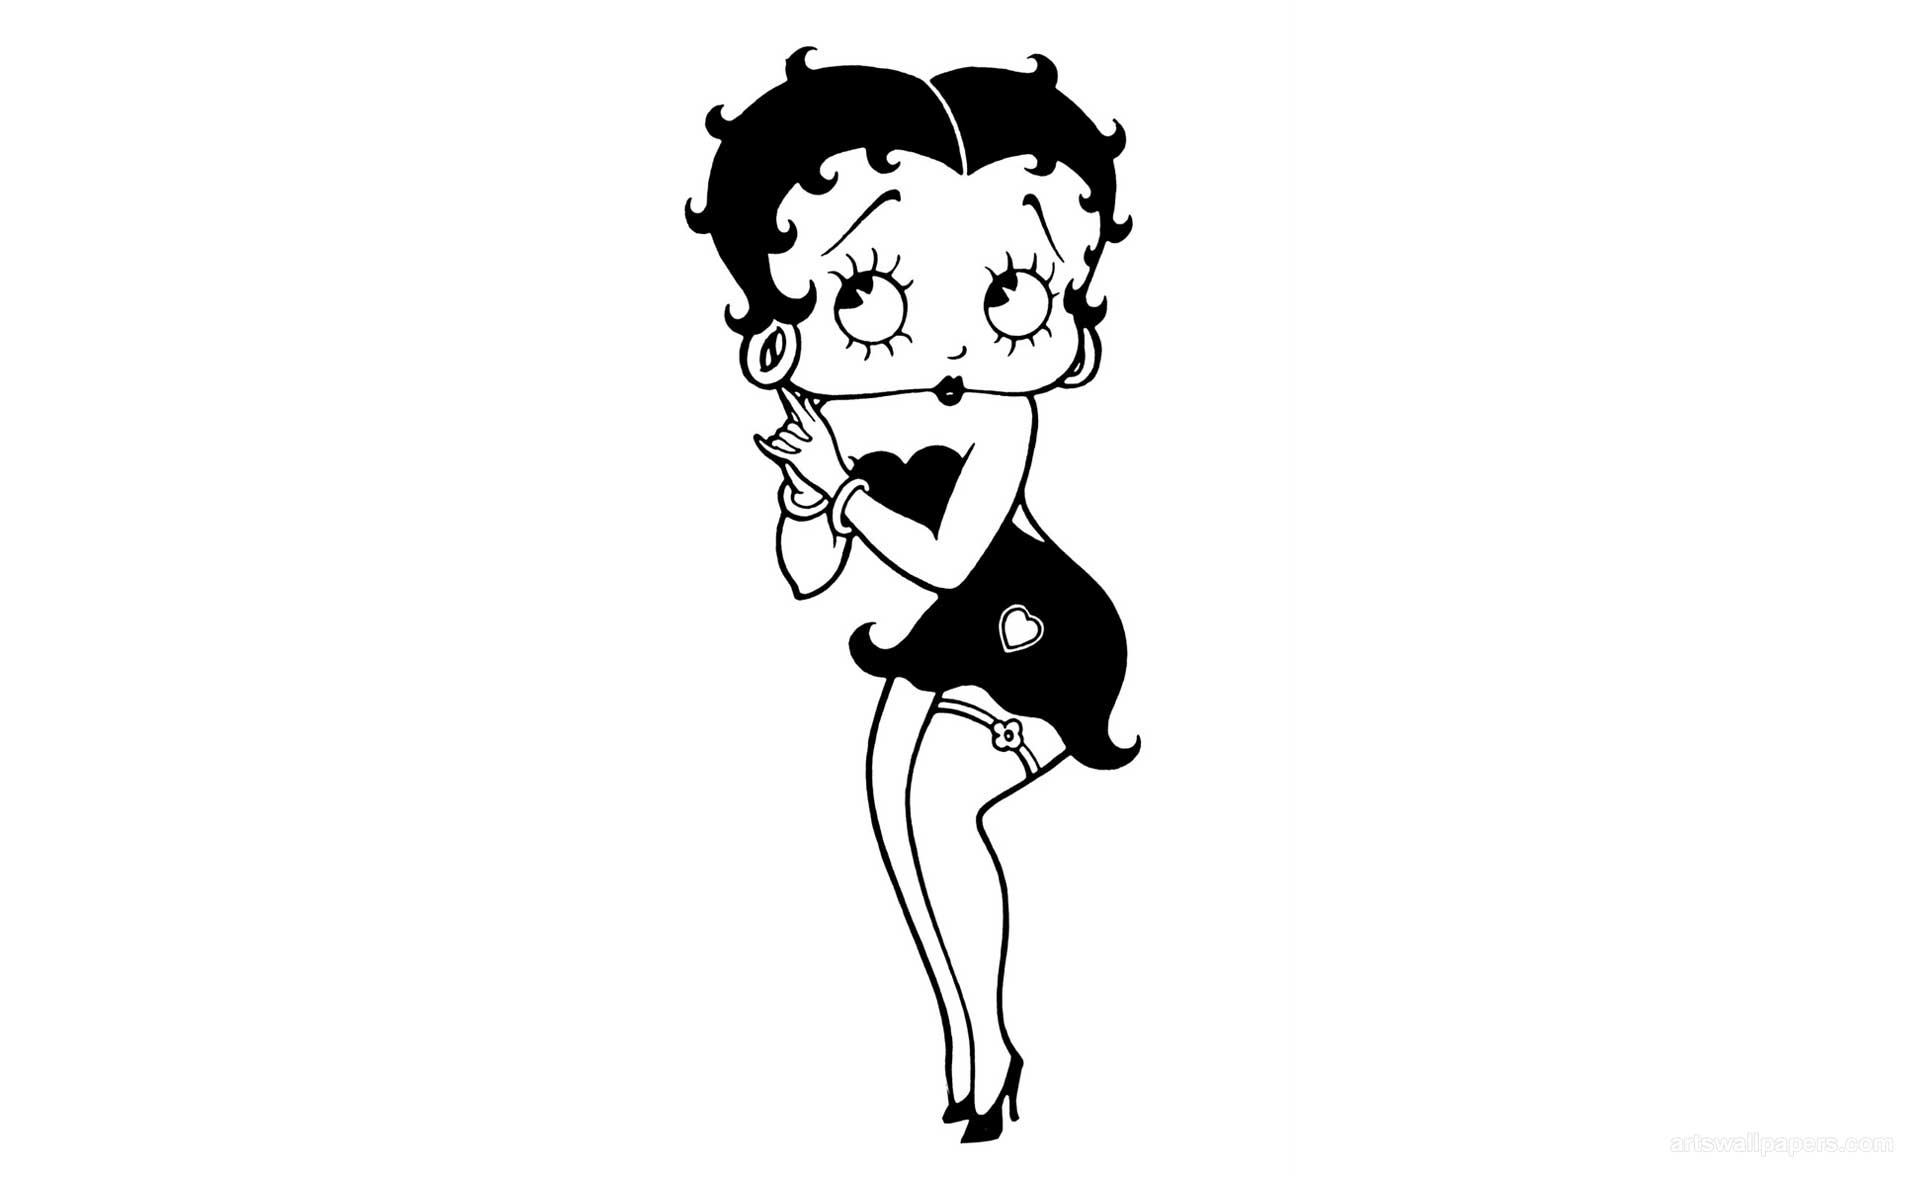 73+] Wallpaper Betty Boop - WallpaperSafari